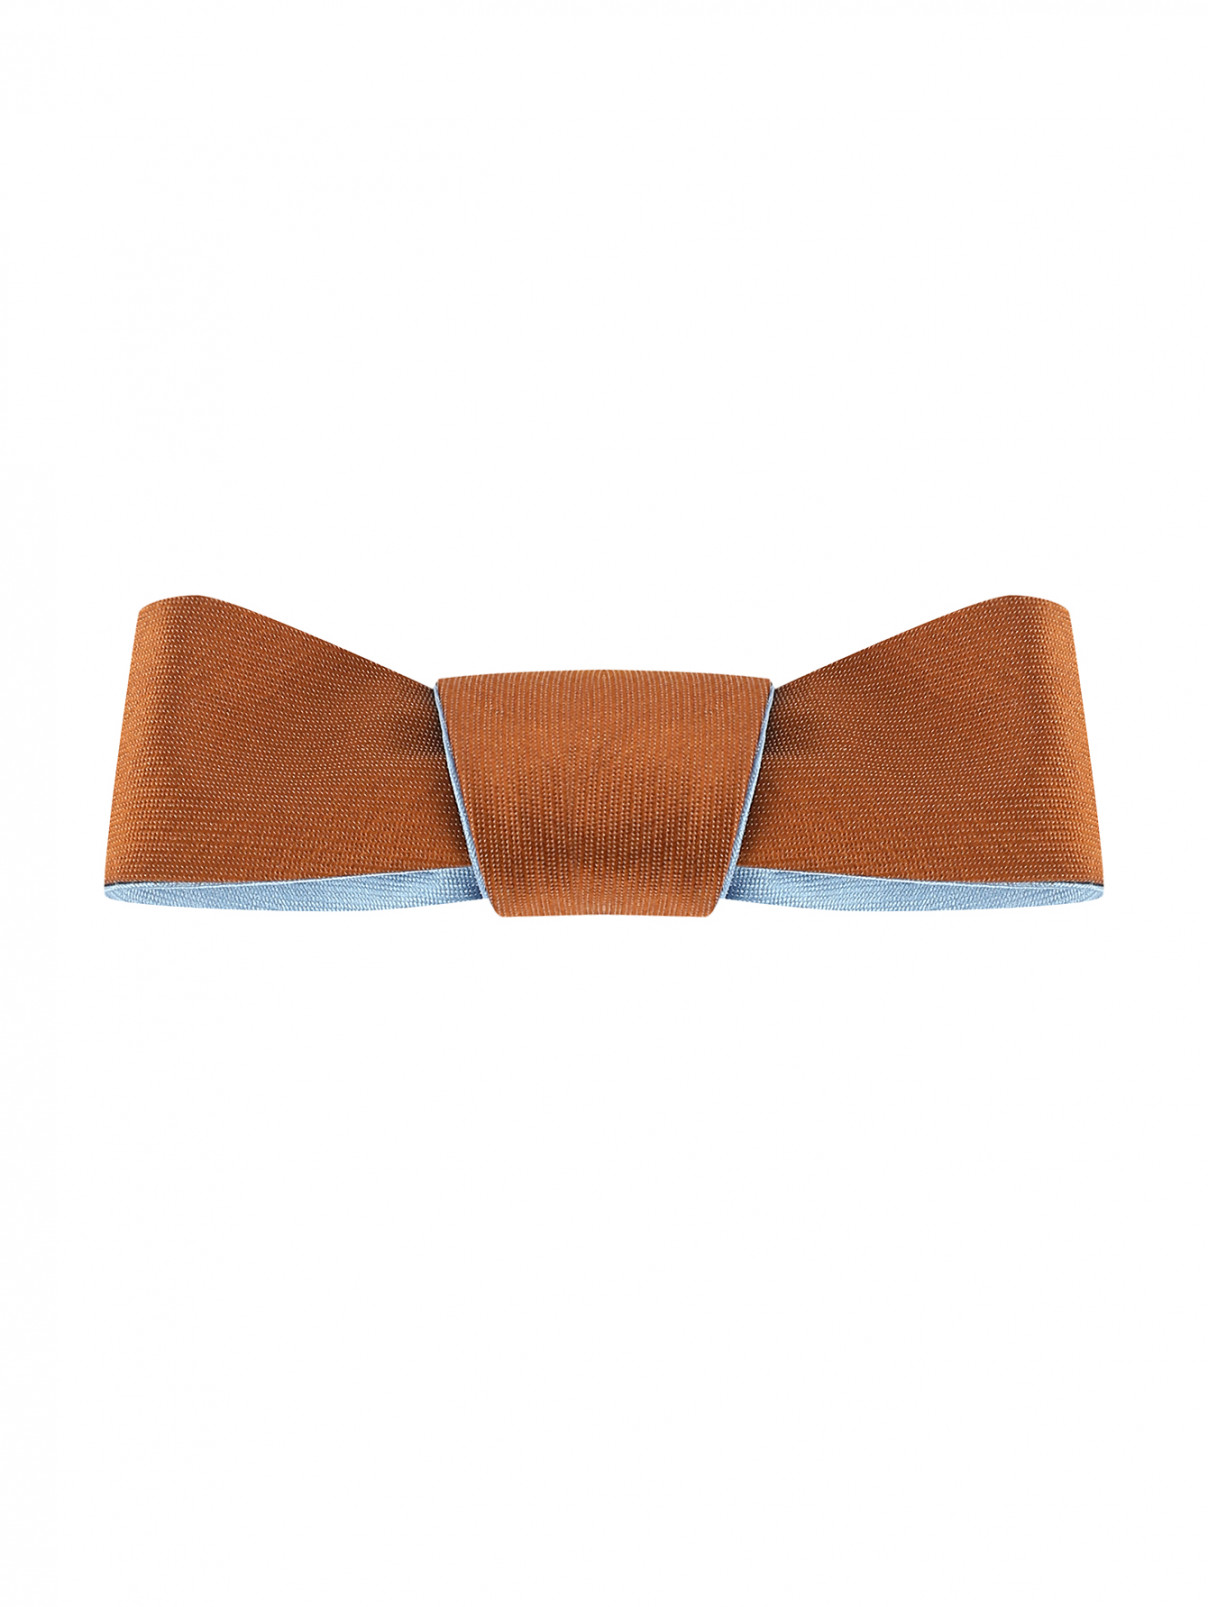 Двухсторонний галстук-бабочка из шелковистого материала MiMiSol  –  Общий вид  – Цвет:  Коричневый